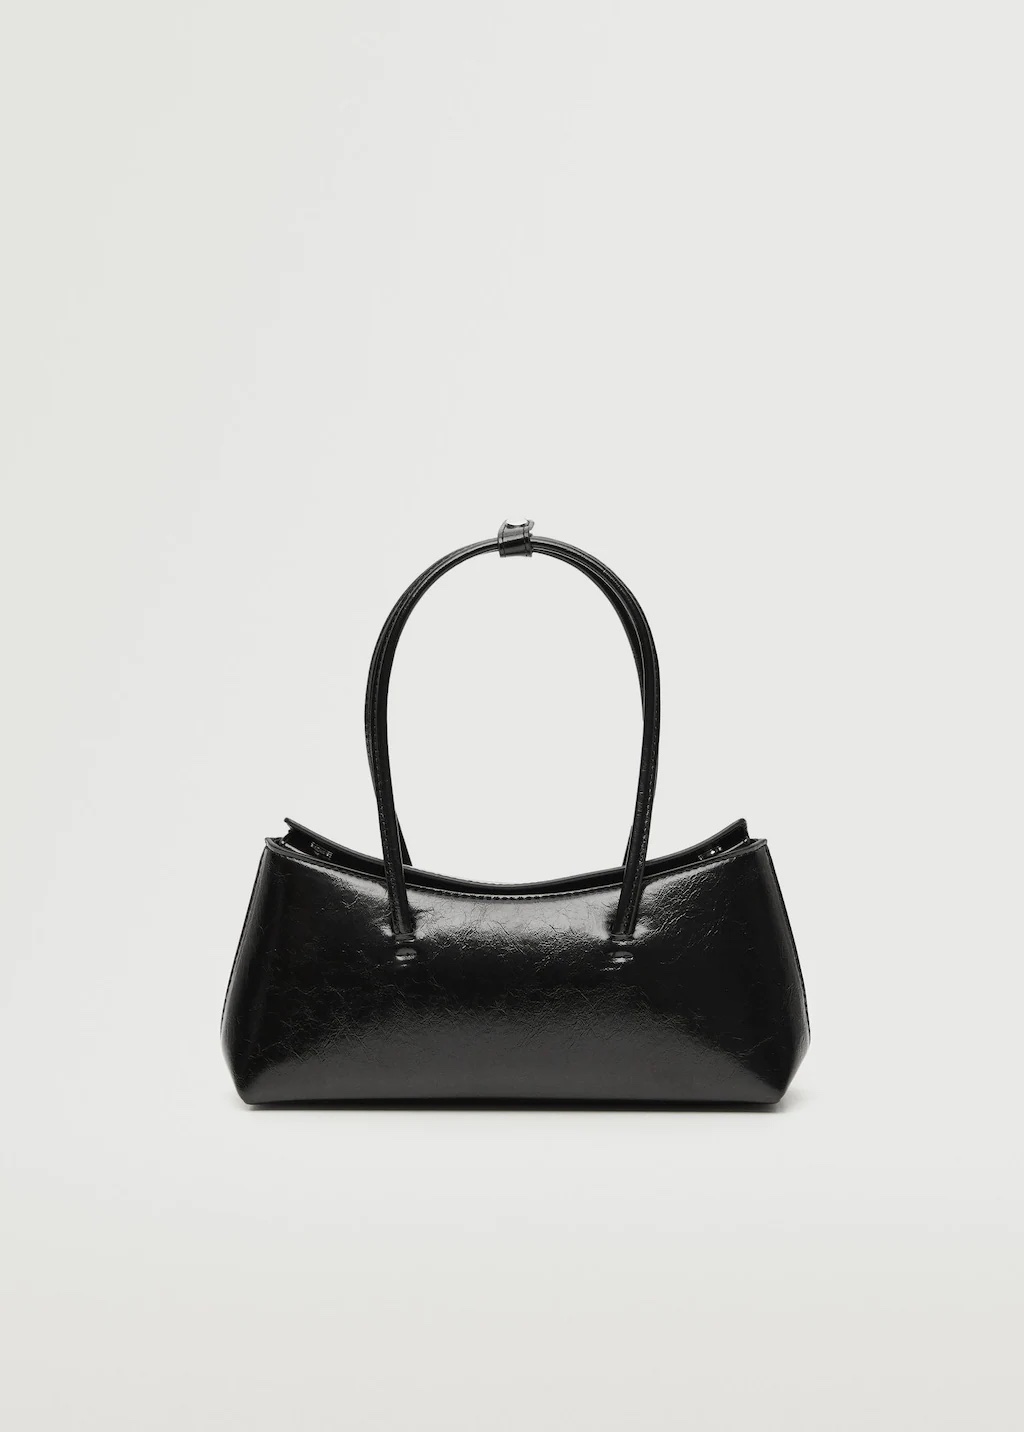 Beauty room - LV handbag $ 150